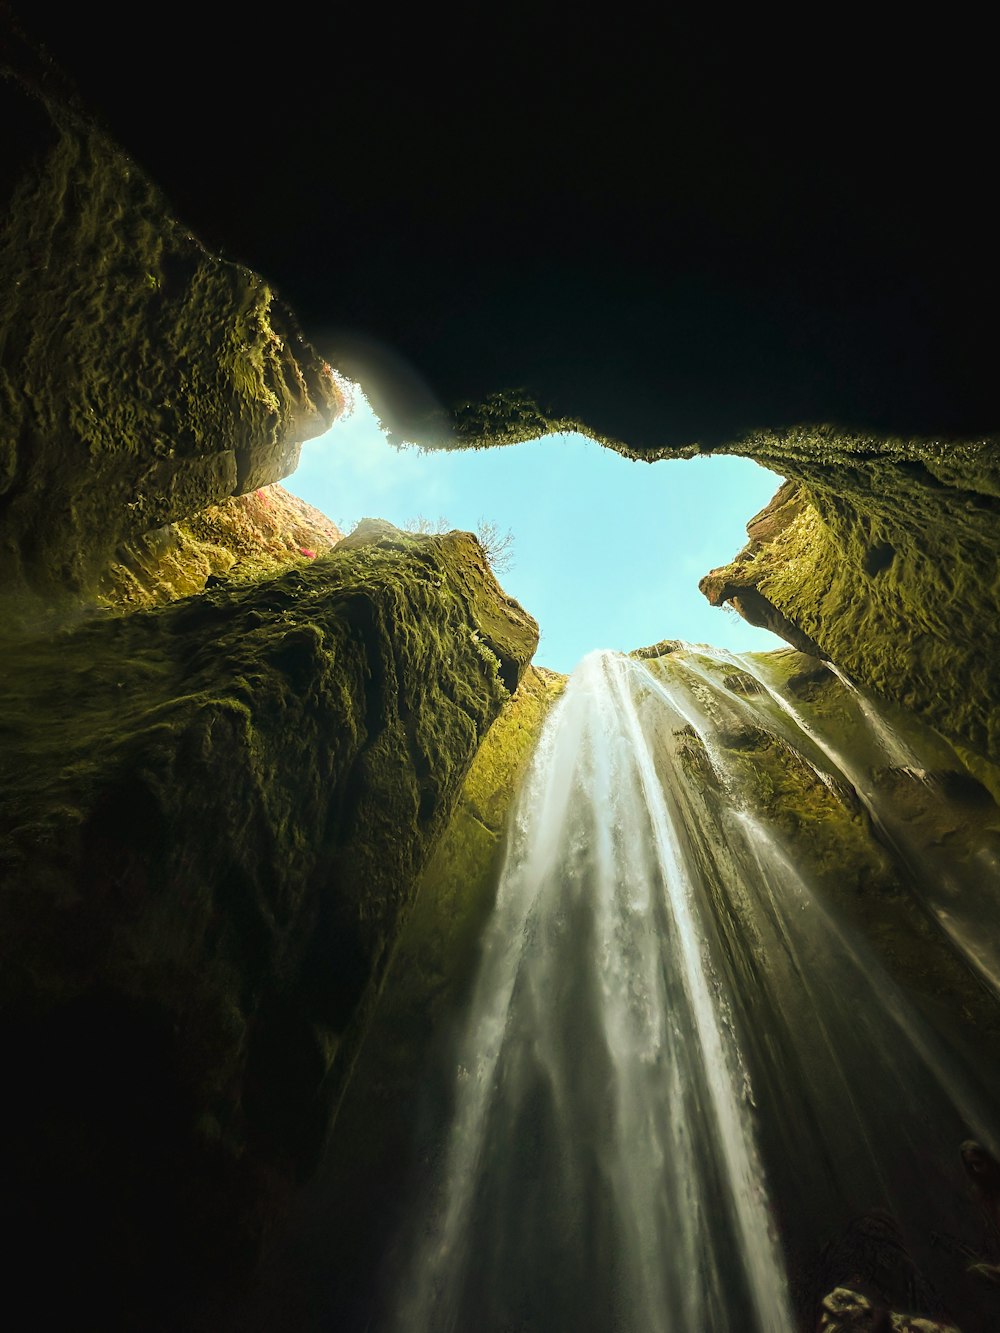 Una vista de una cascada desde el fondo de una cueva